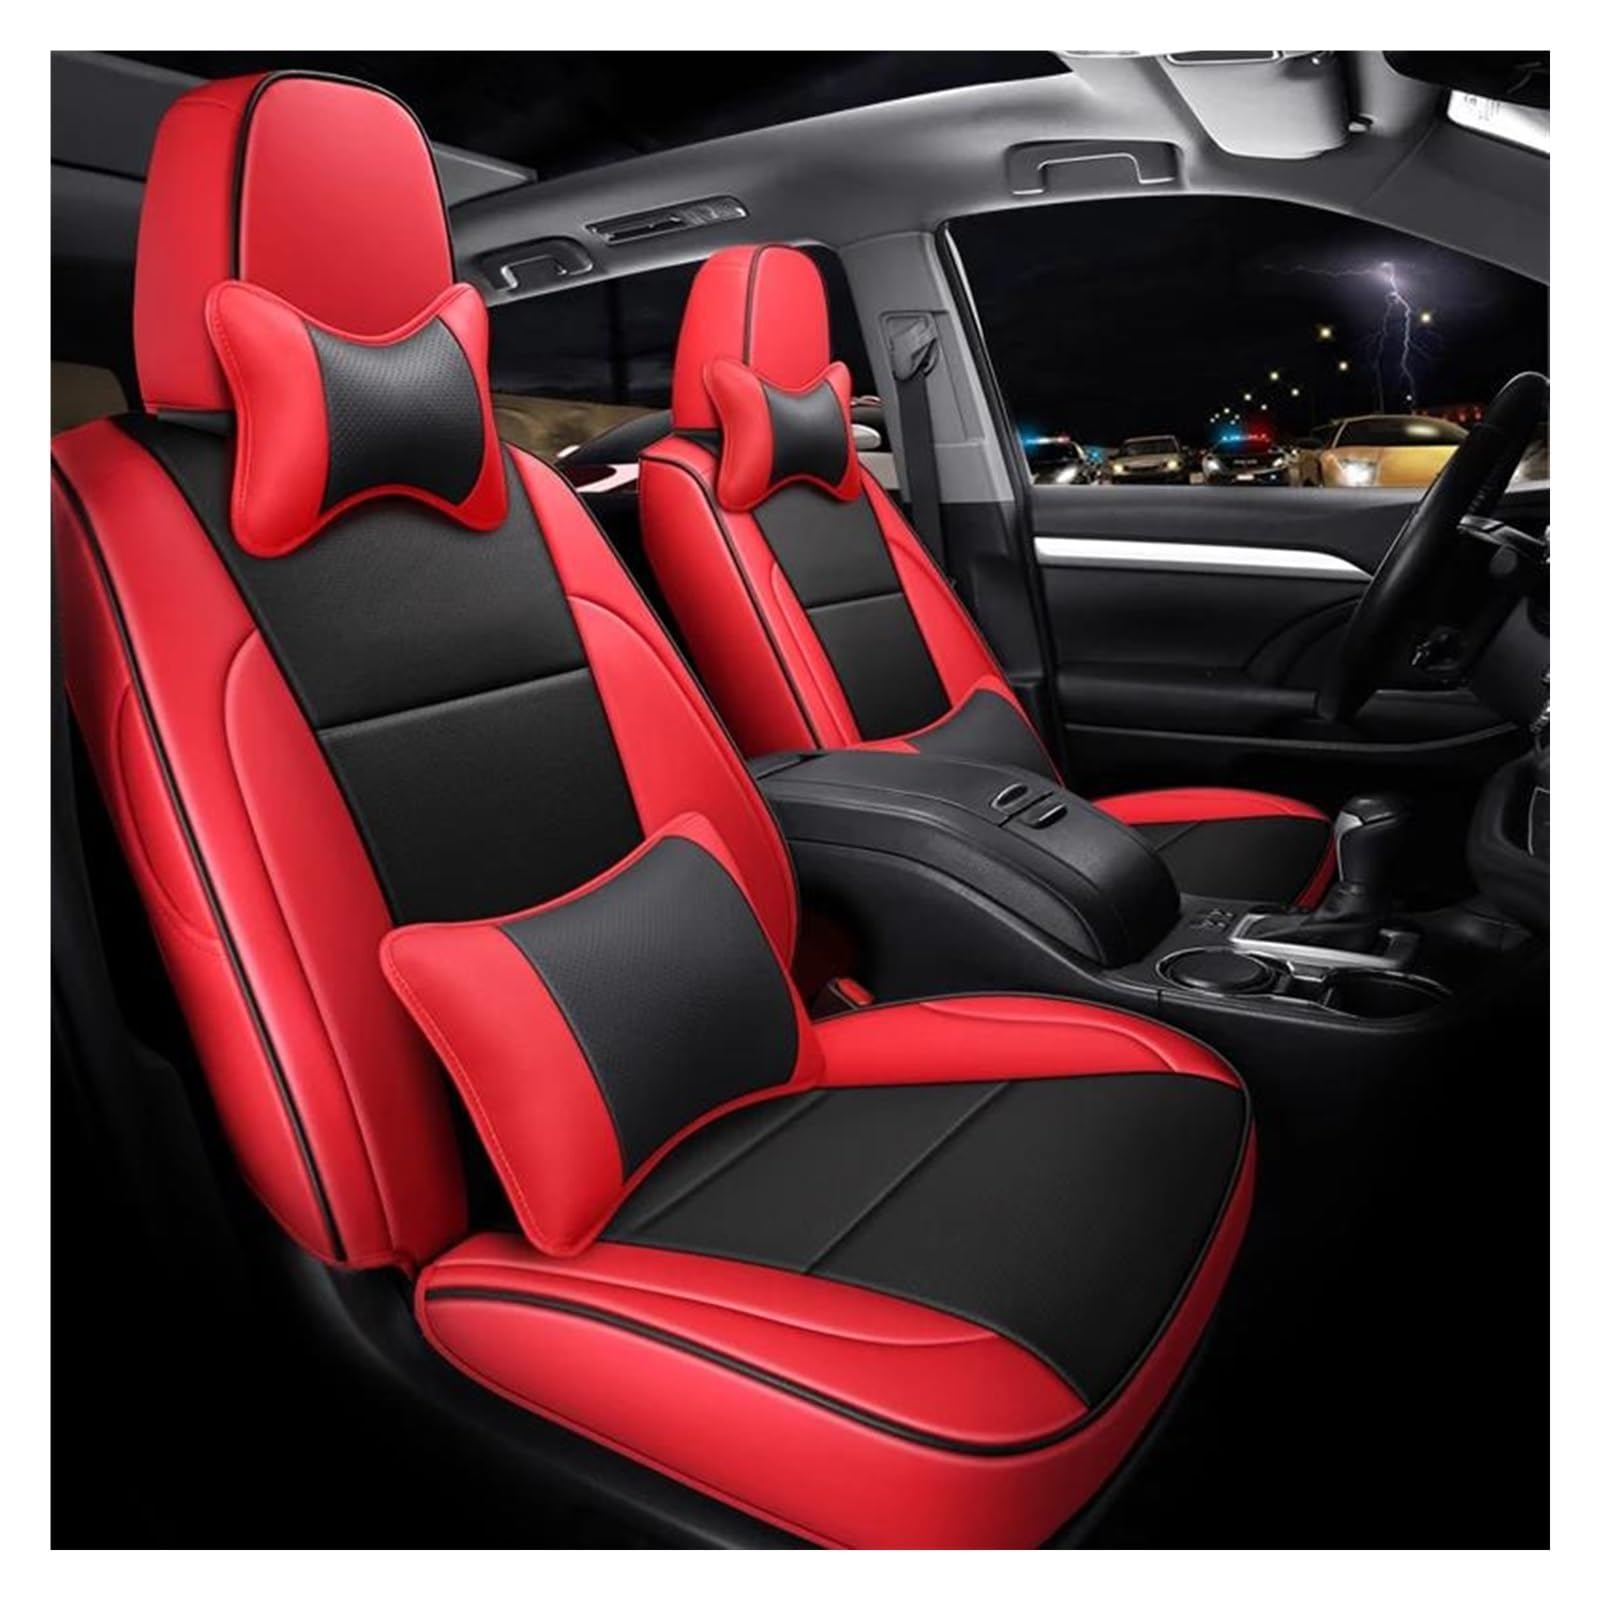 FOGJCMET Auto-Sitzbezüge Für Toyota Für Highlander 2015 2016 2017 2018 5 Sitz Custom Leder Auto Sitzbezüge Autositzschoner(Red) von FOGJCMET